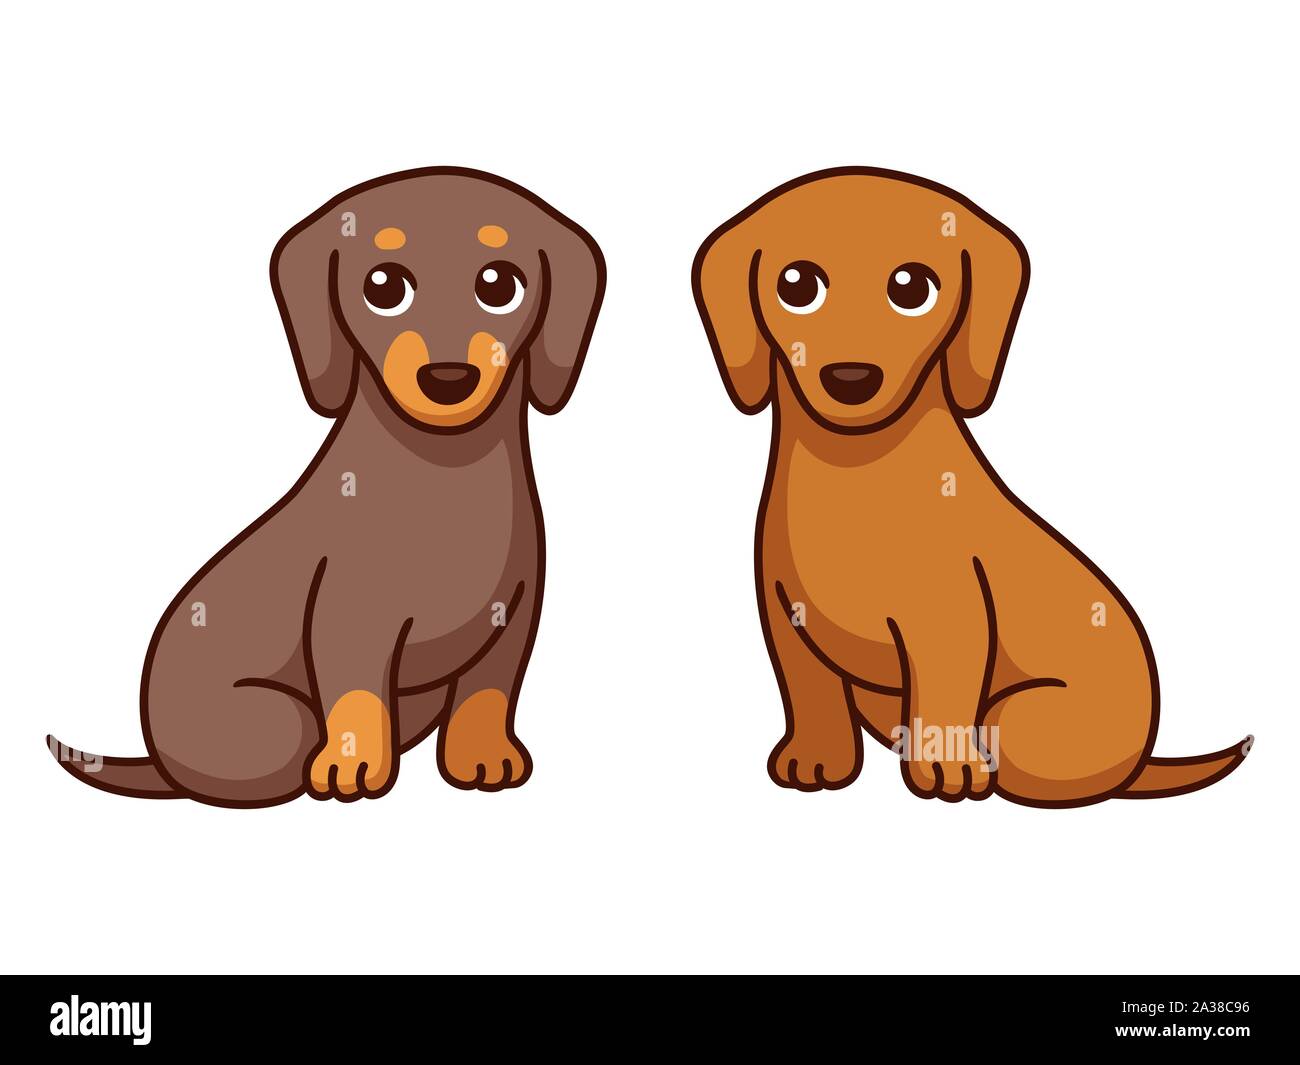 Zwei cartoon Dackel, Schwarz und Braun. Paar Hunde sitzen togerther.  Niedlichen Hund zeichnen, einfachen Vektor Illustration Stock-Vektorgrafik  - Alamy